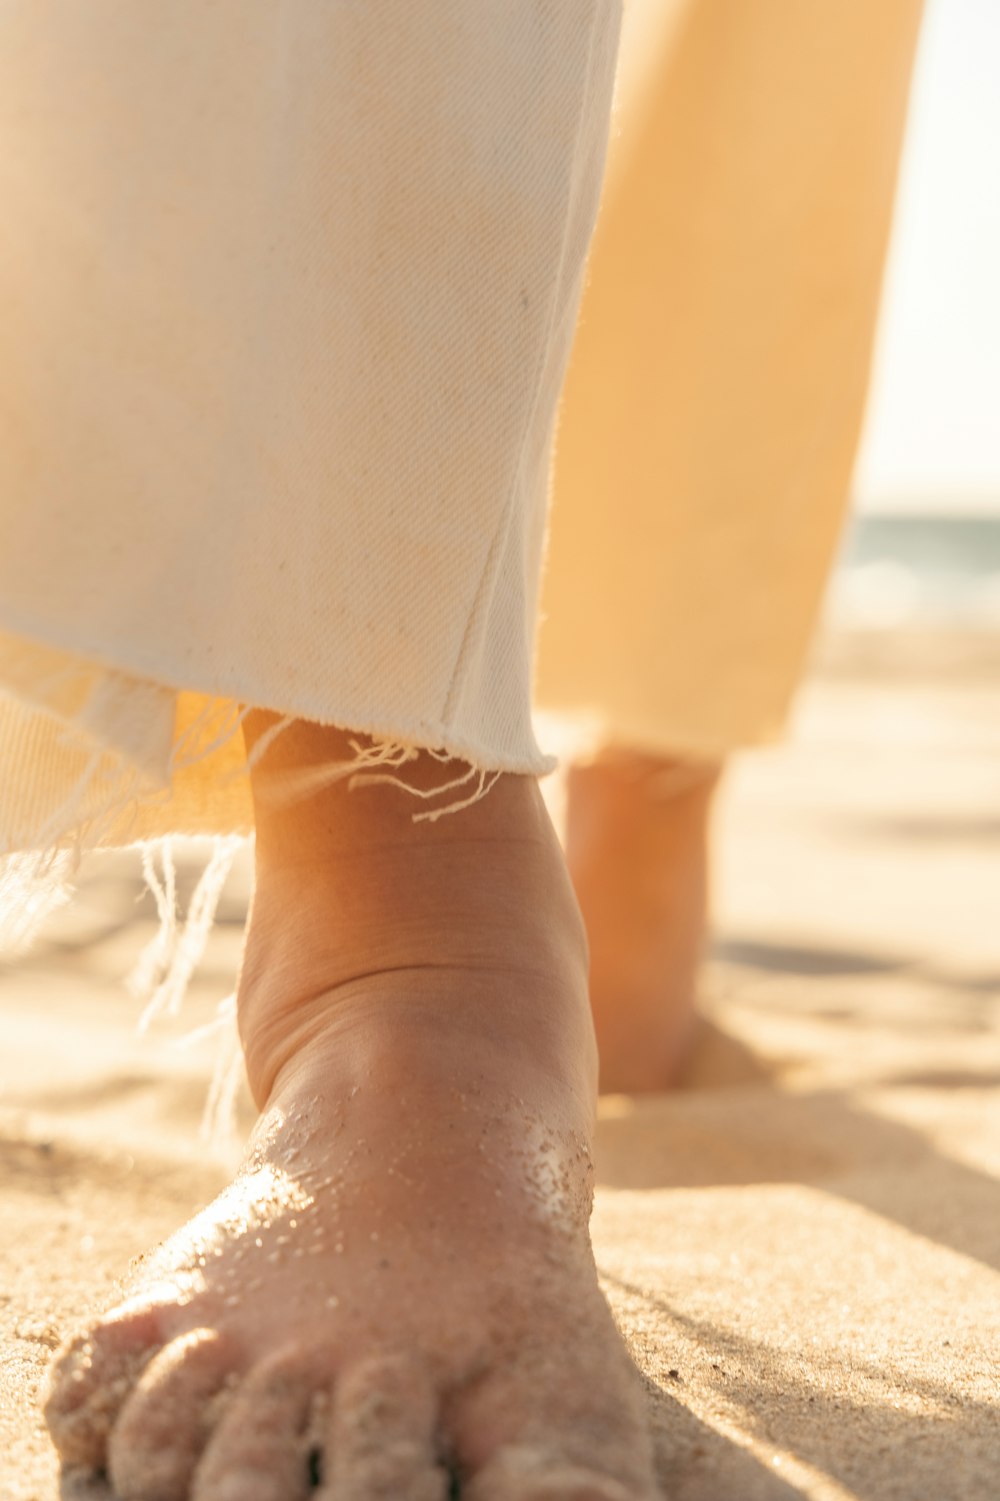 Eine Nahaufnahme der Füße einer Person im Sand